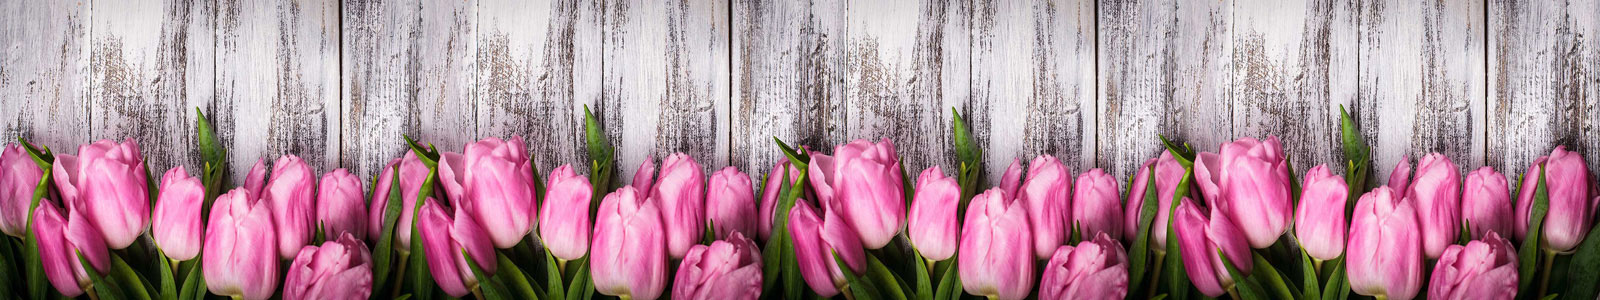 №5895 - Розовые тюльпаны на деревянном фоне